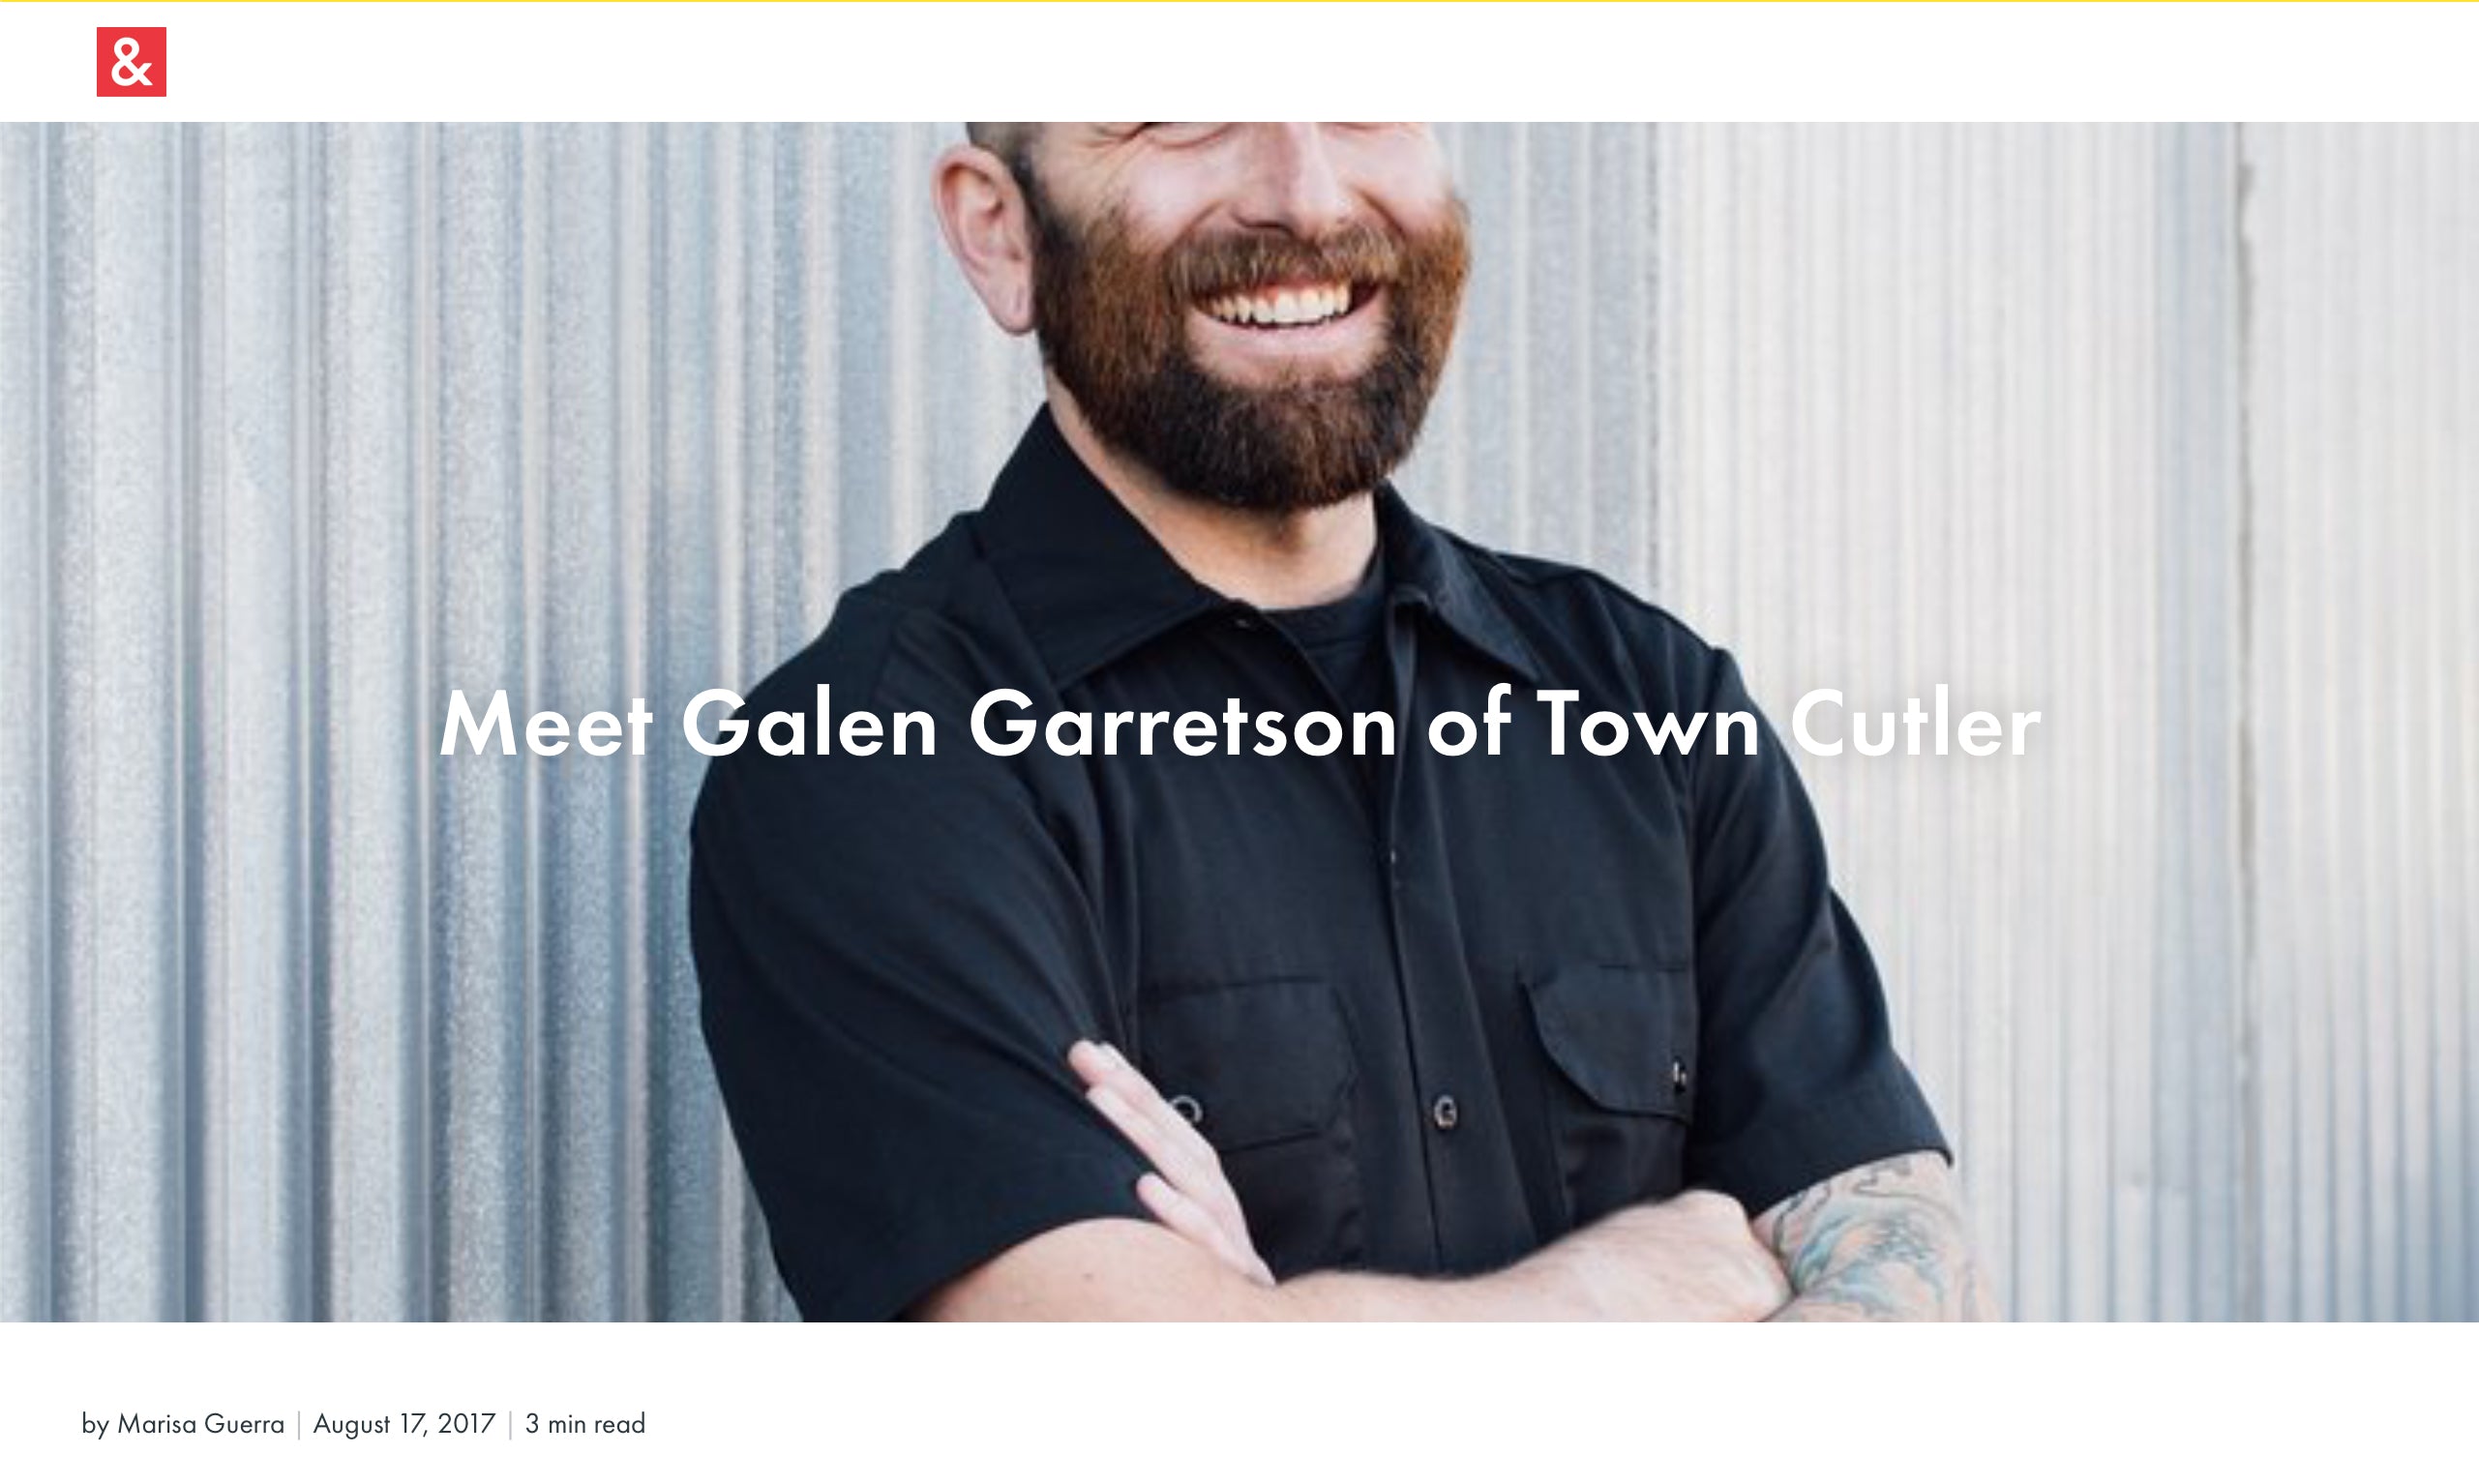 Hedley & Bennett - Meet Galen Garretson of Town Cutler